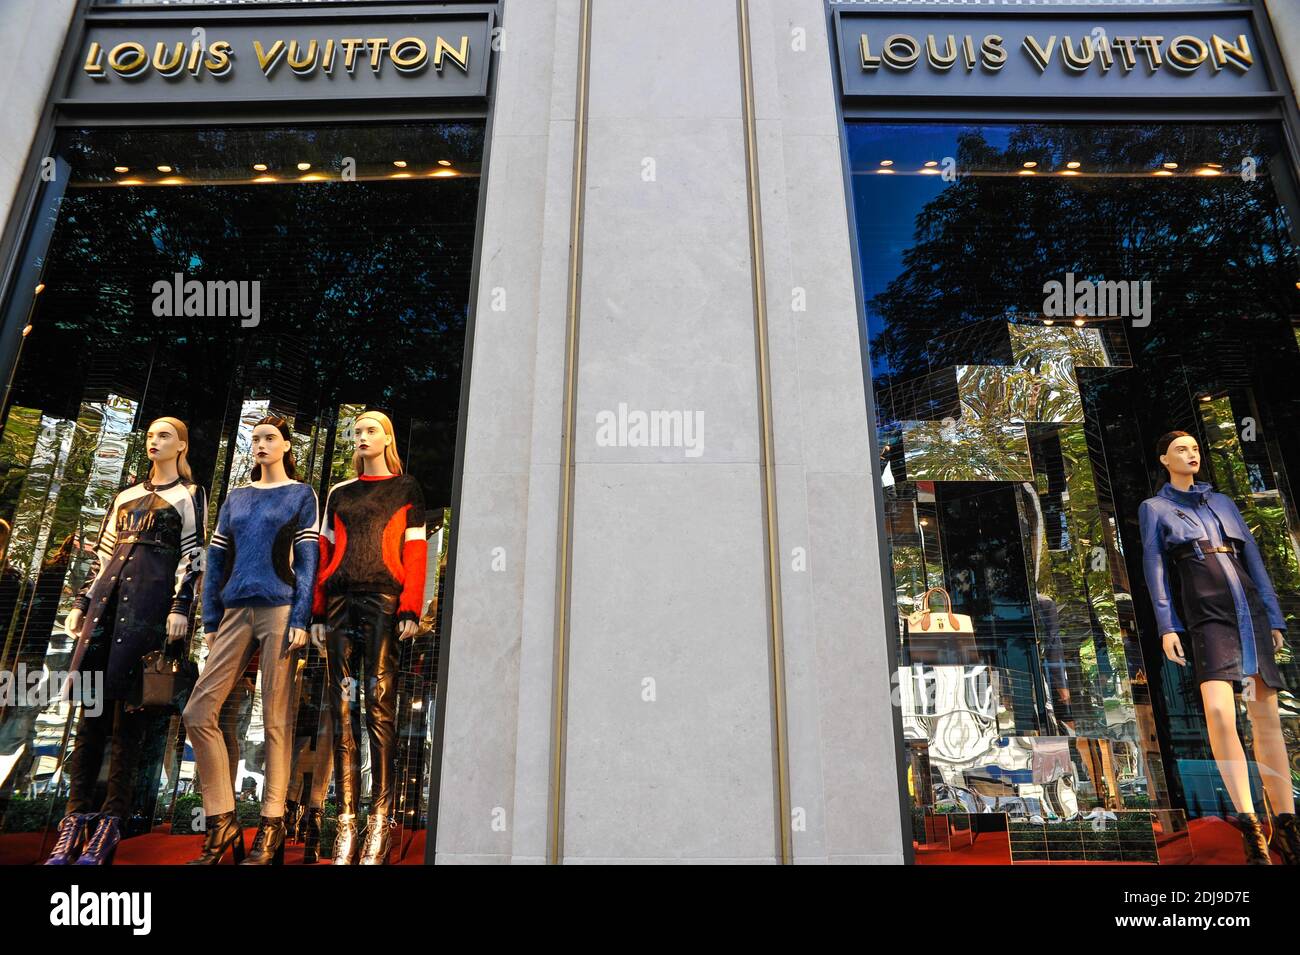 Louis vuitton paris avenue montaigne hi-res stock photography and images -  Alamy